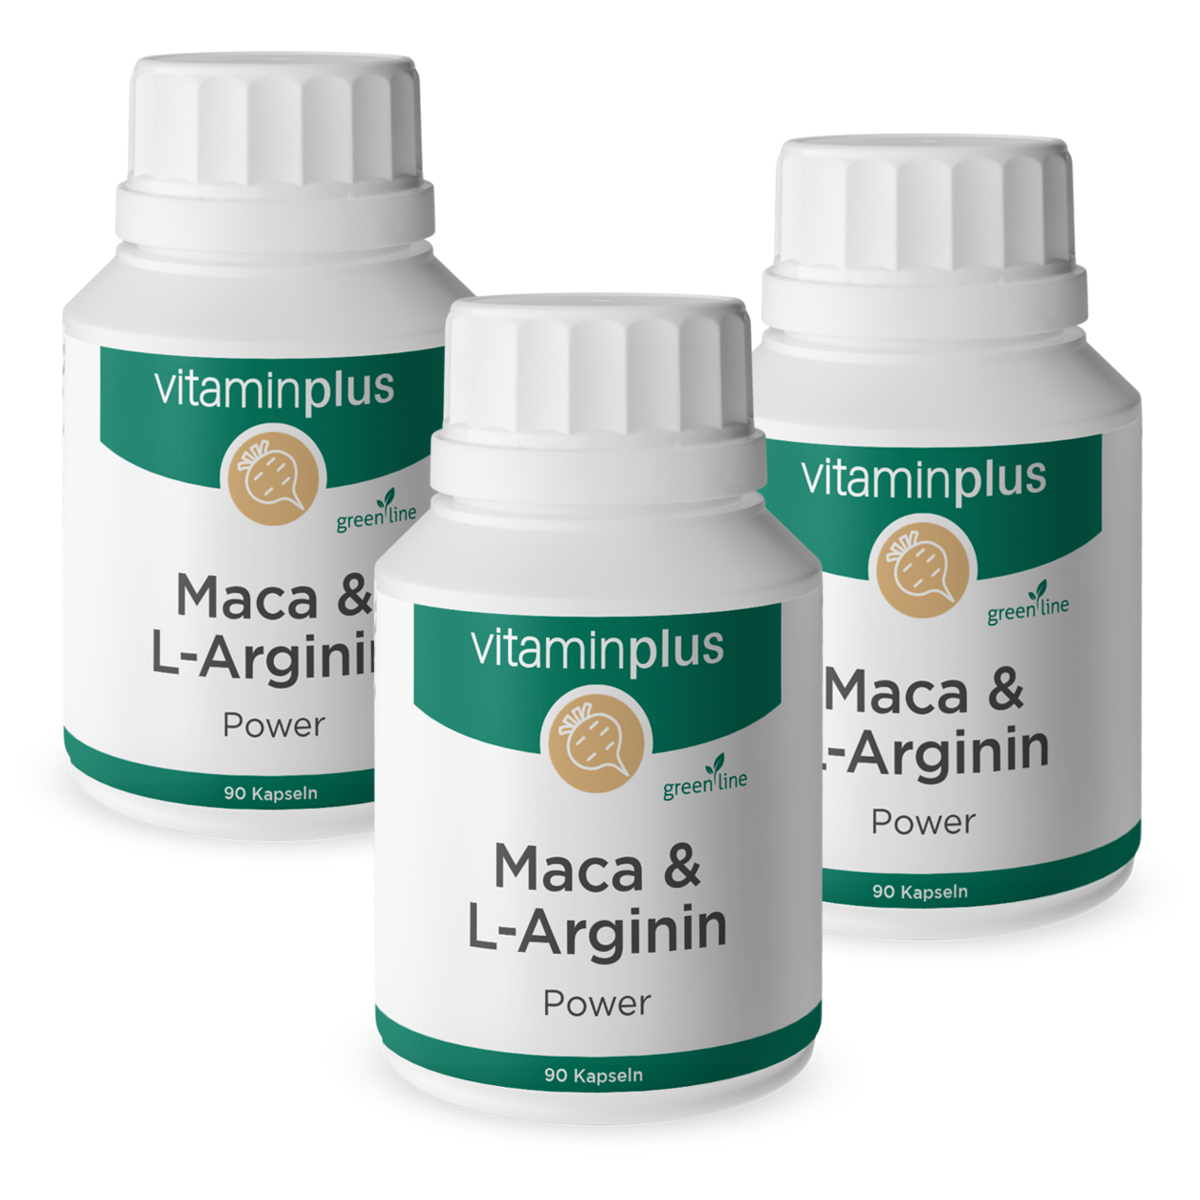 Vitaminplus Maca & L-Arginin im Trio Angebot